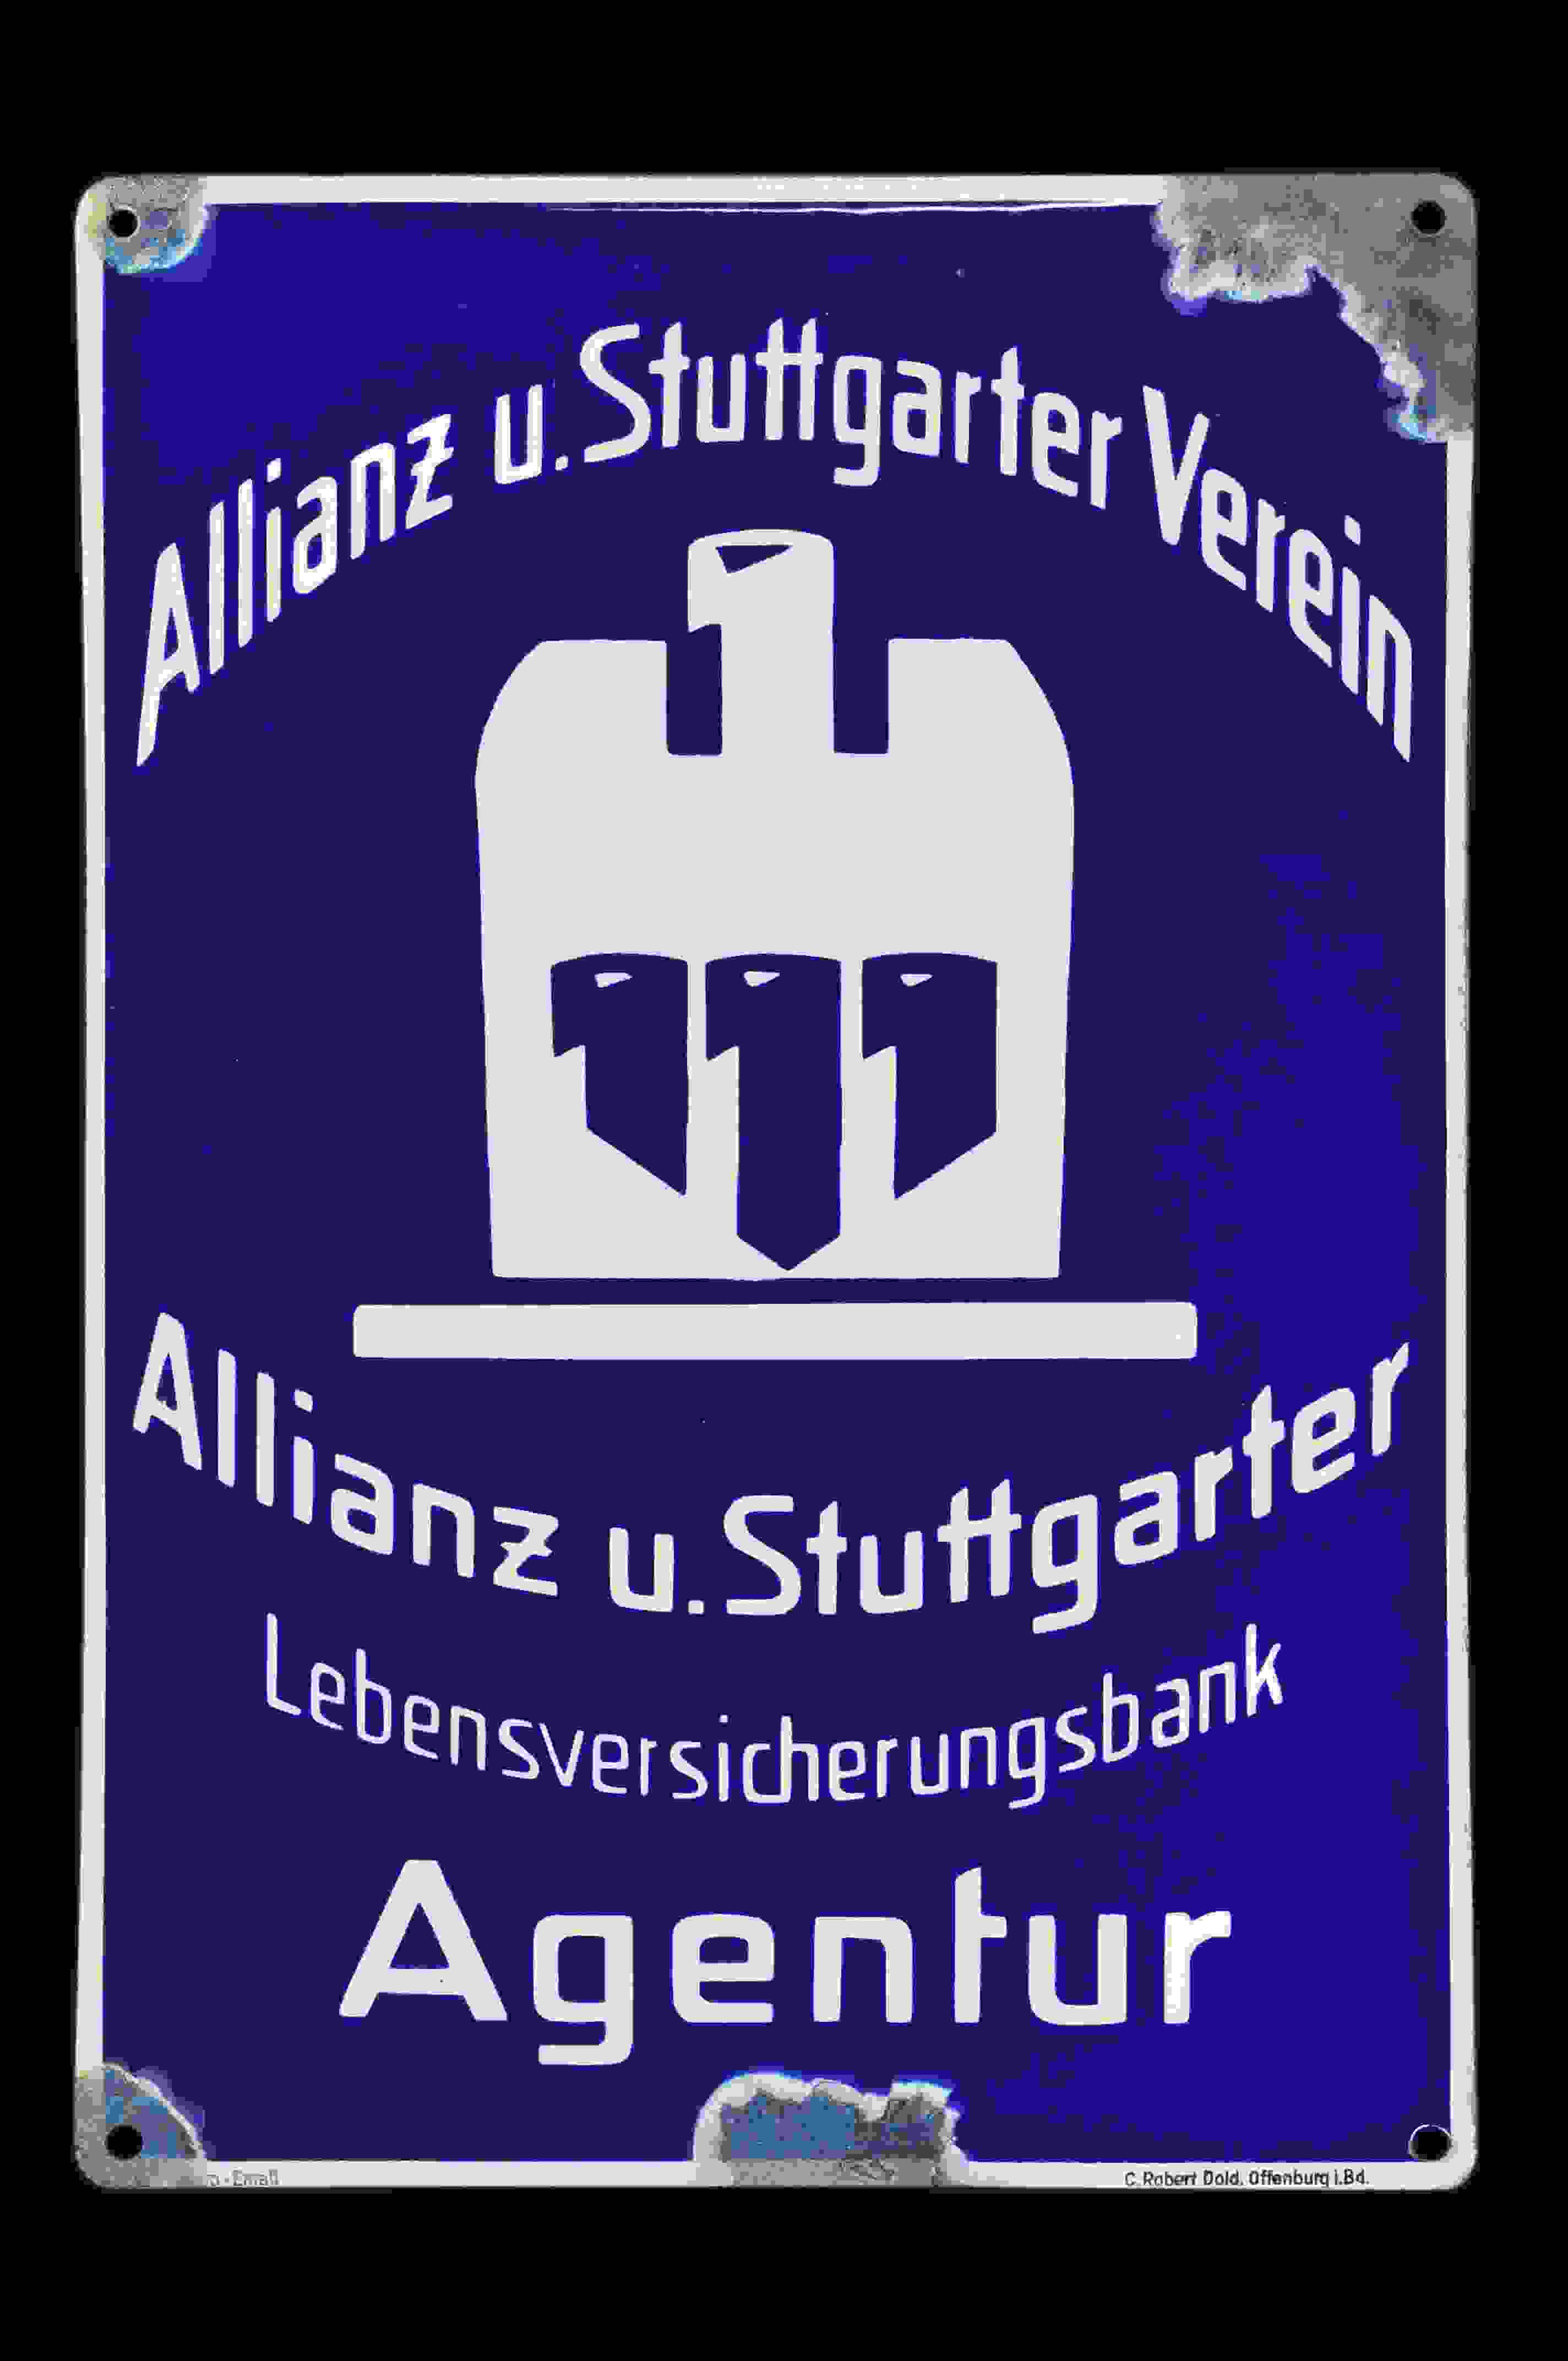 Allianz u. Stuttgarter Verein 